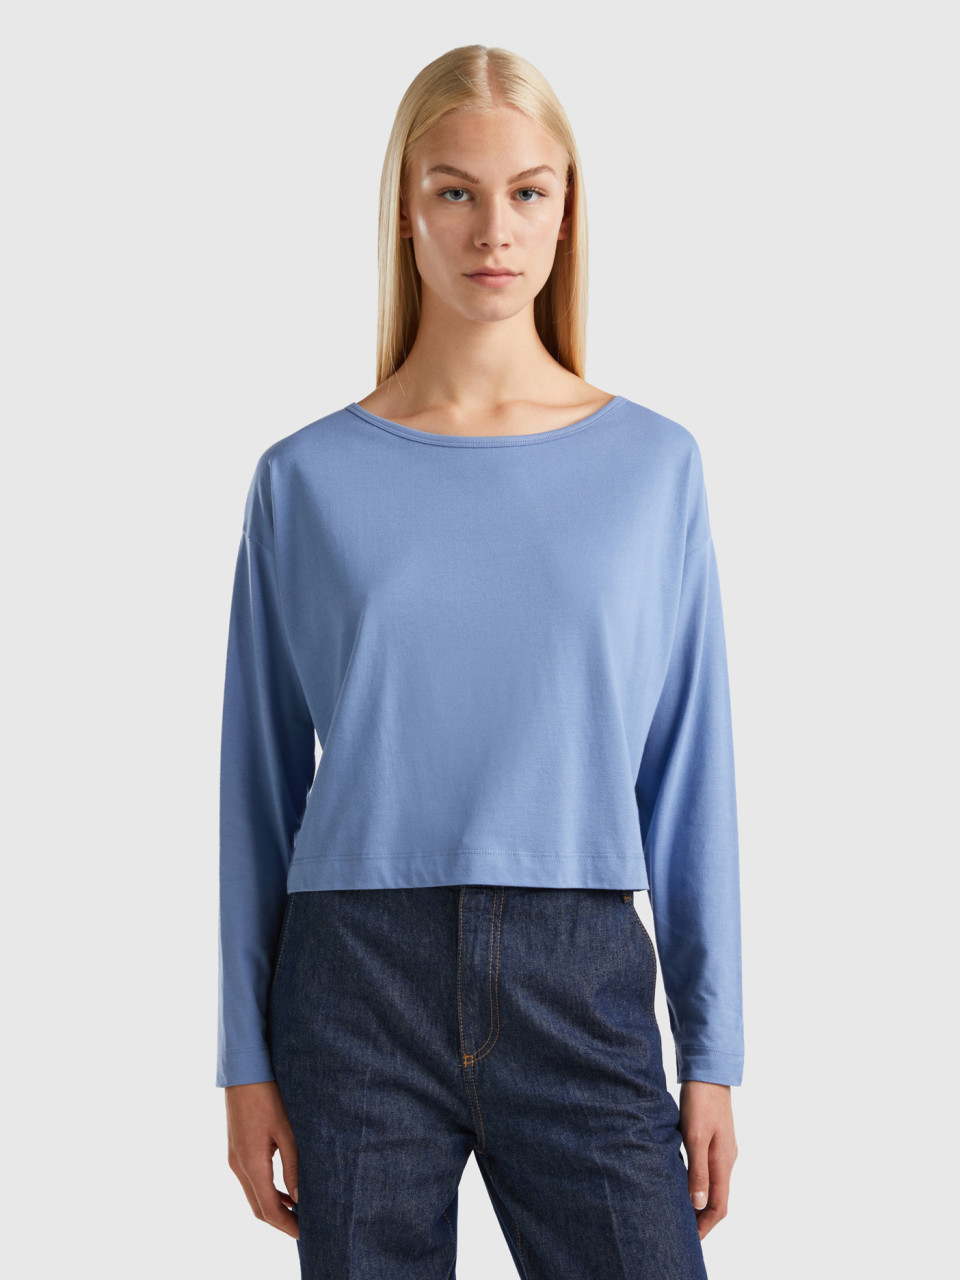 Benetton, Sky Blue Long Fiber Cotton T-shirt, Light Blue, Women